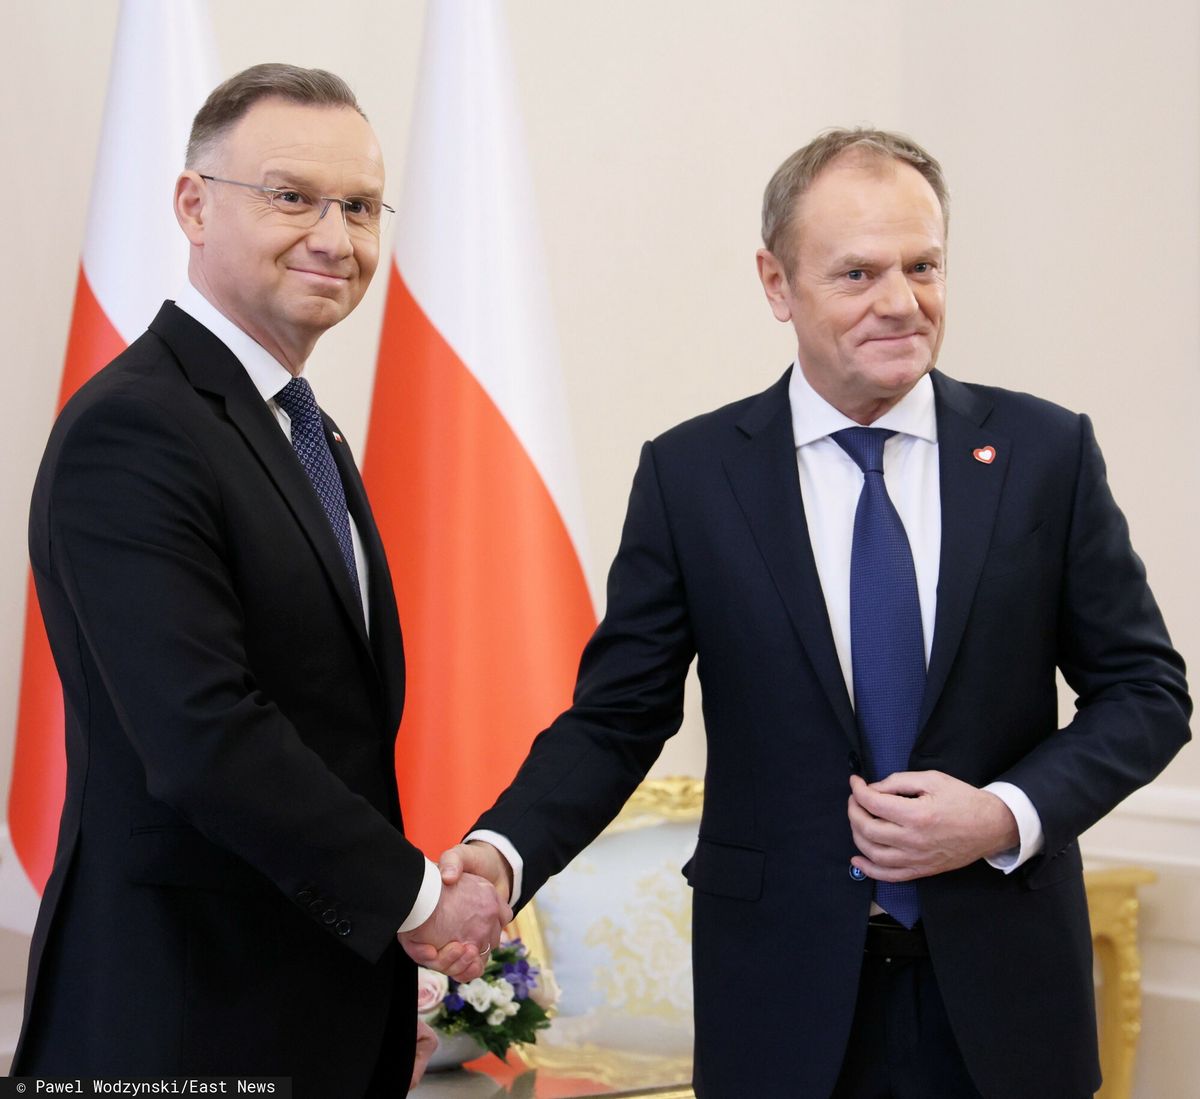 Wymiany uprzejmości na Radzie Gabinetowej między prezydentem Andrzejem Dudą a Donaldem Tuskiem możemy się spodziewać jedynie na początku posiedzenia